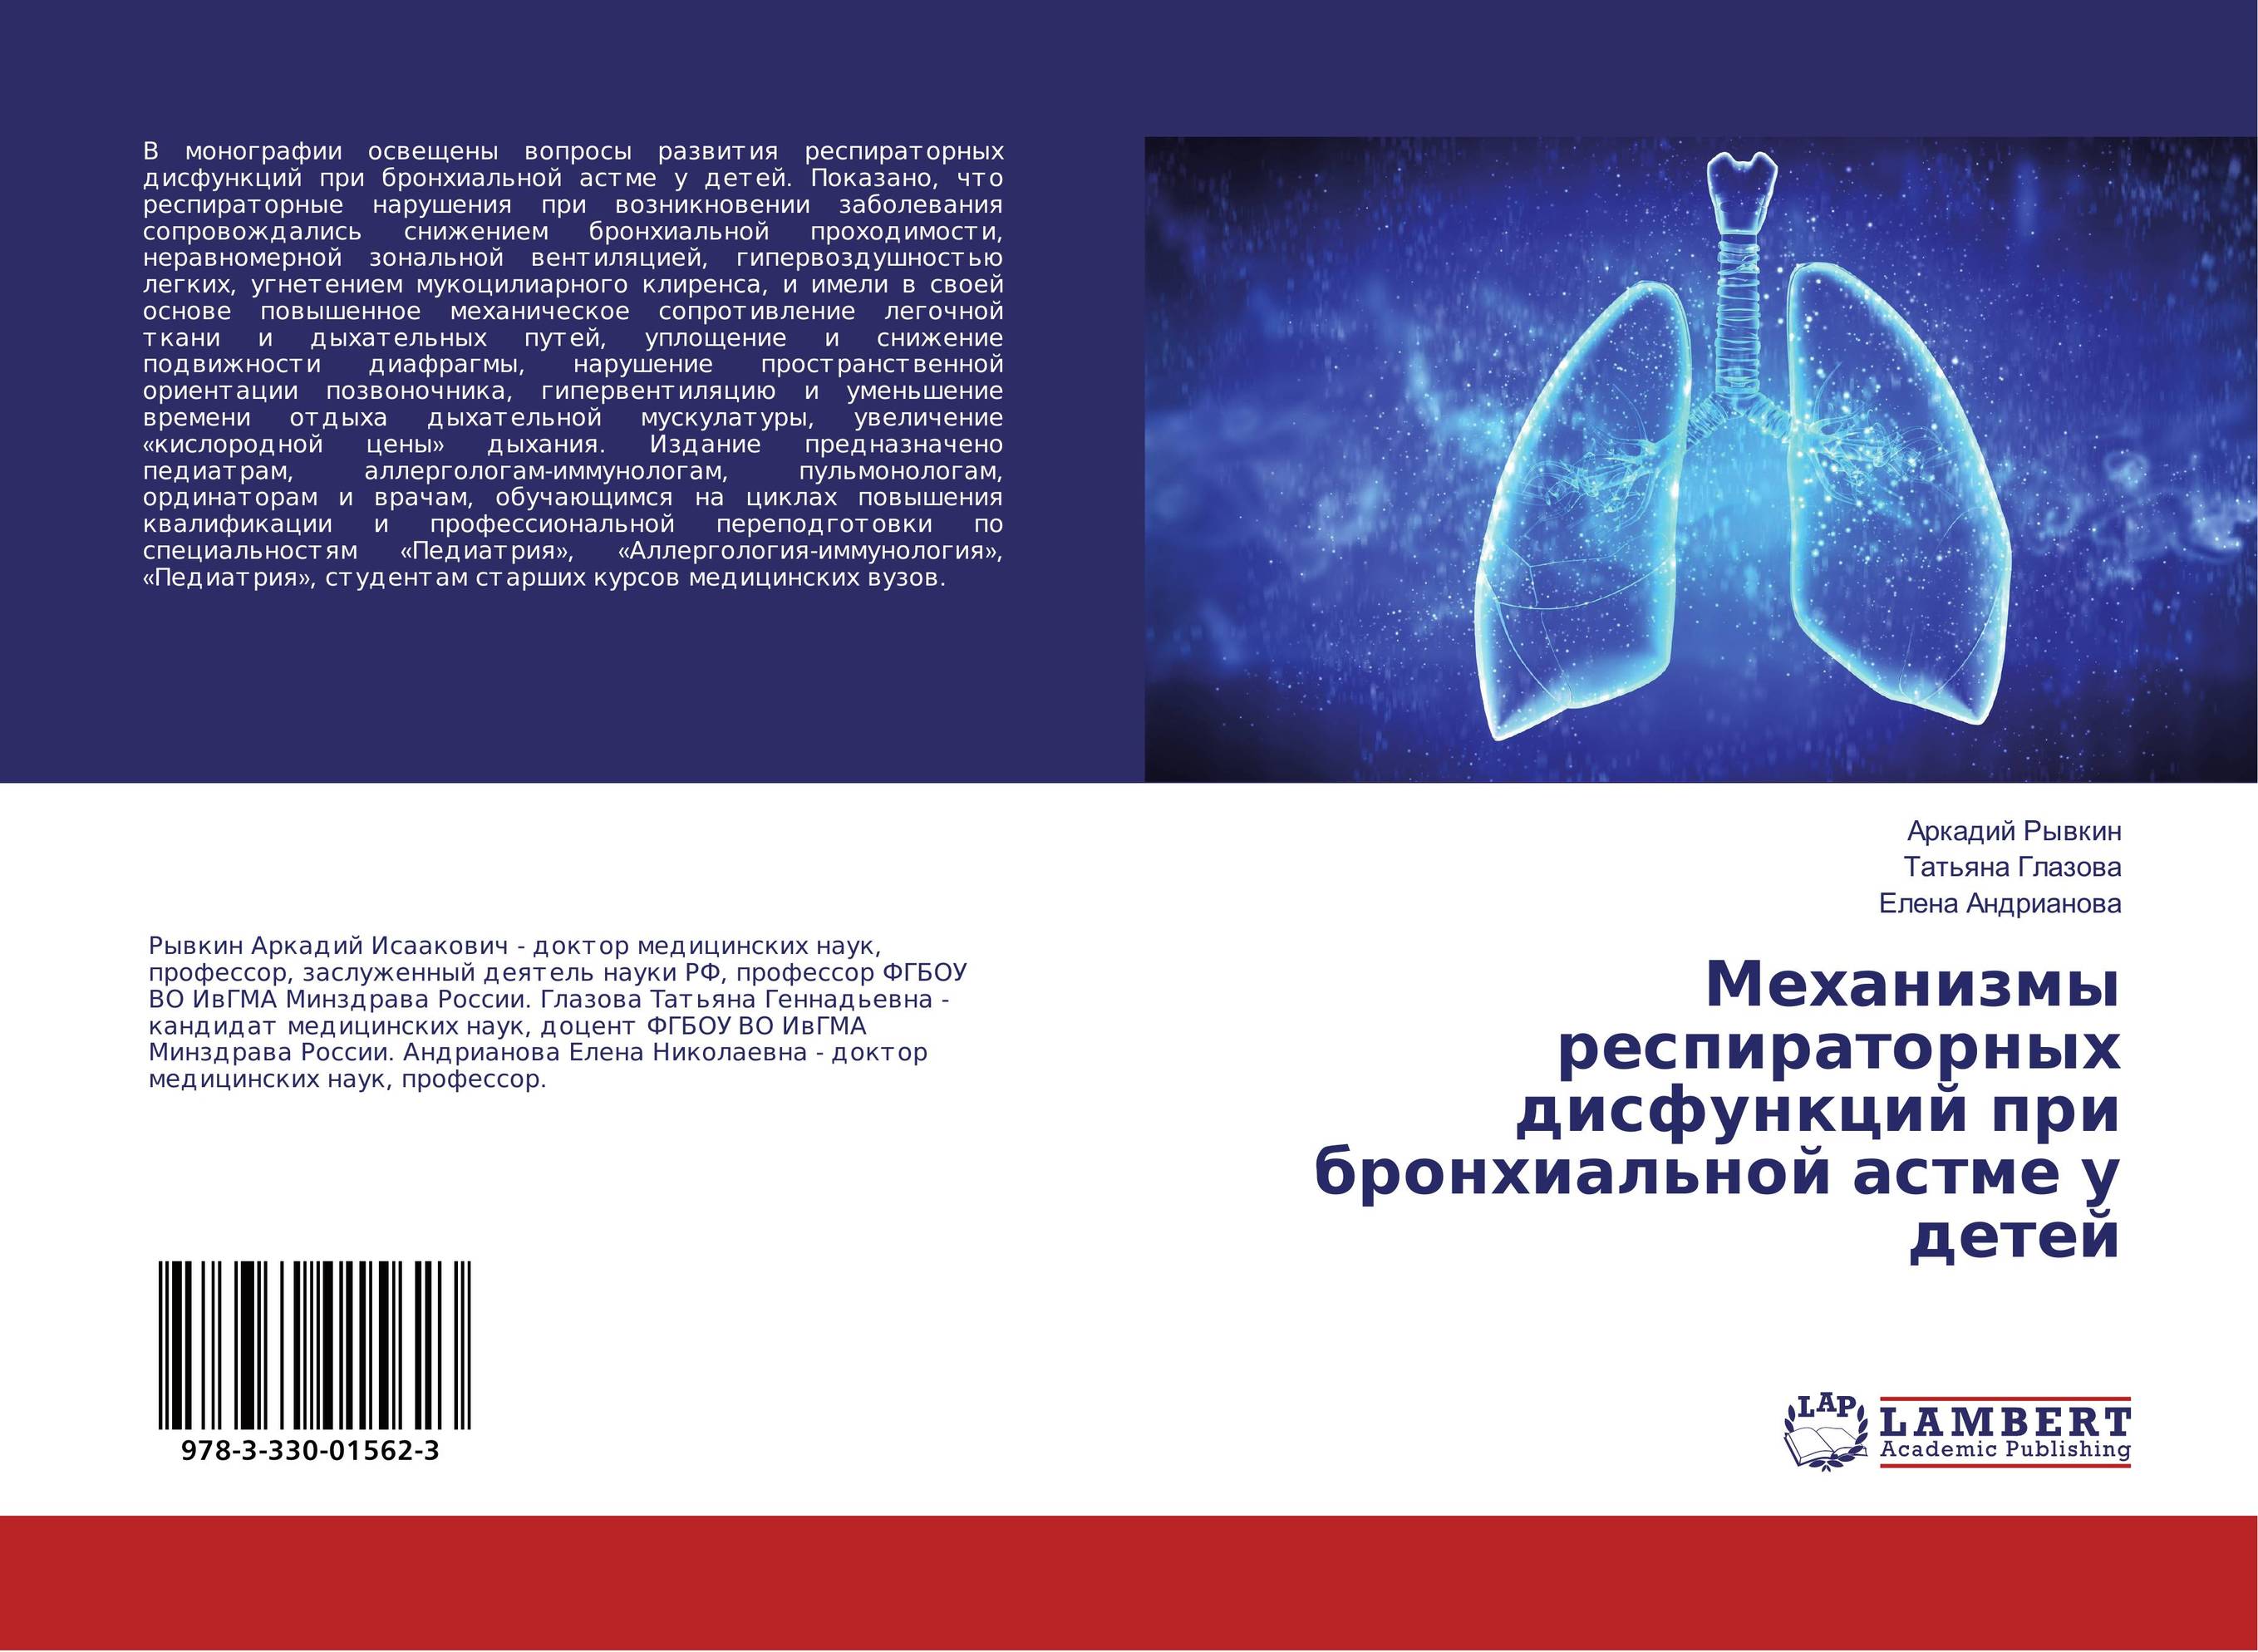 
        Механизмы респираторных дисфункций при бронхиальной астме у детей..
      